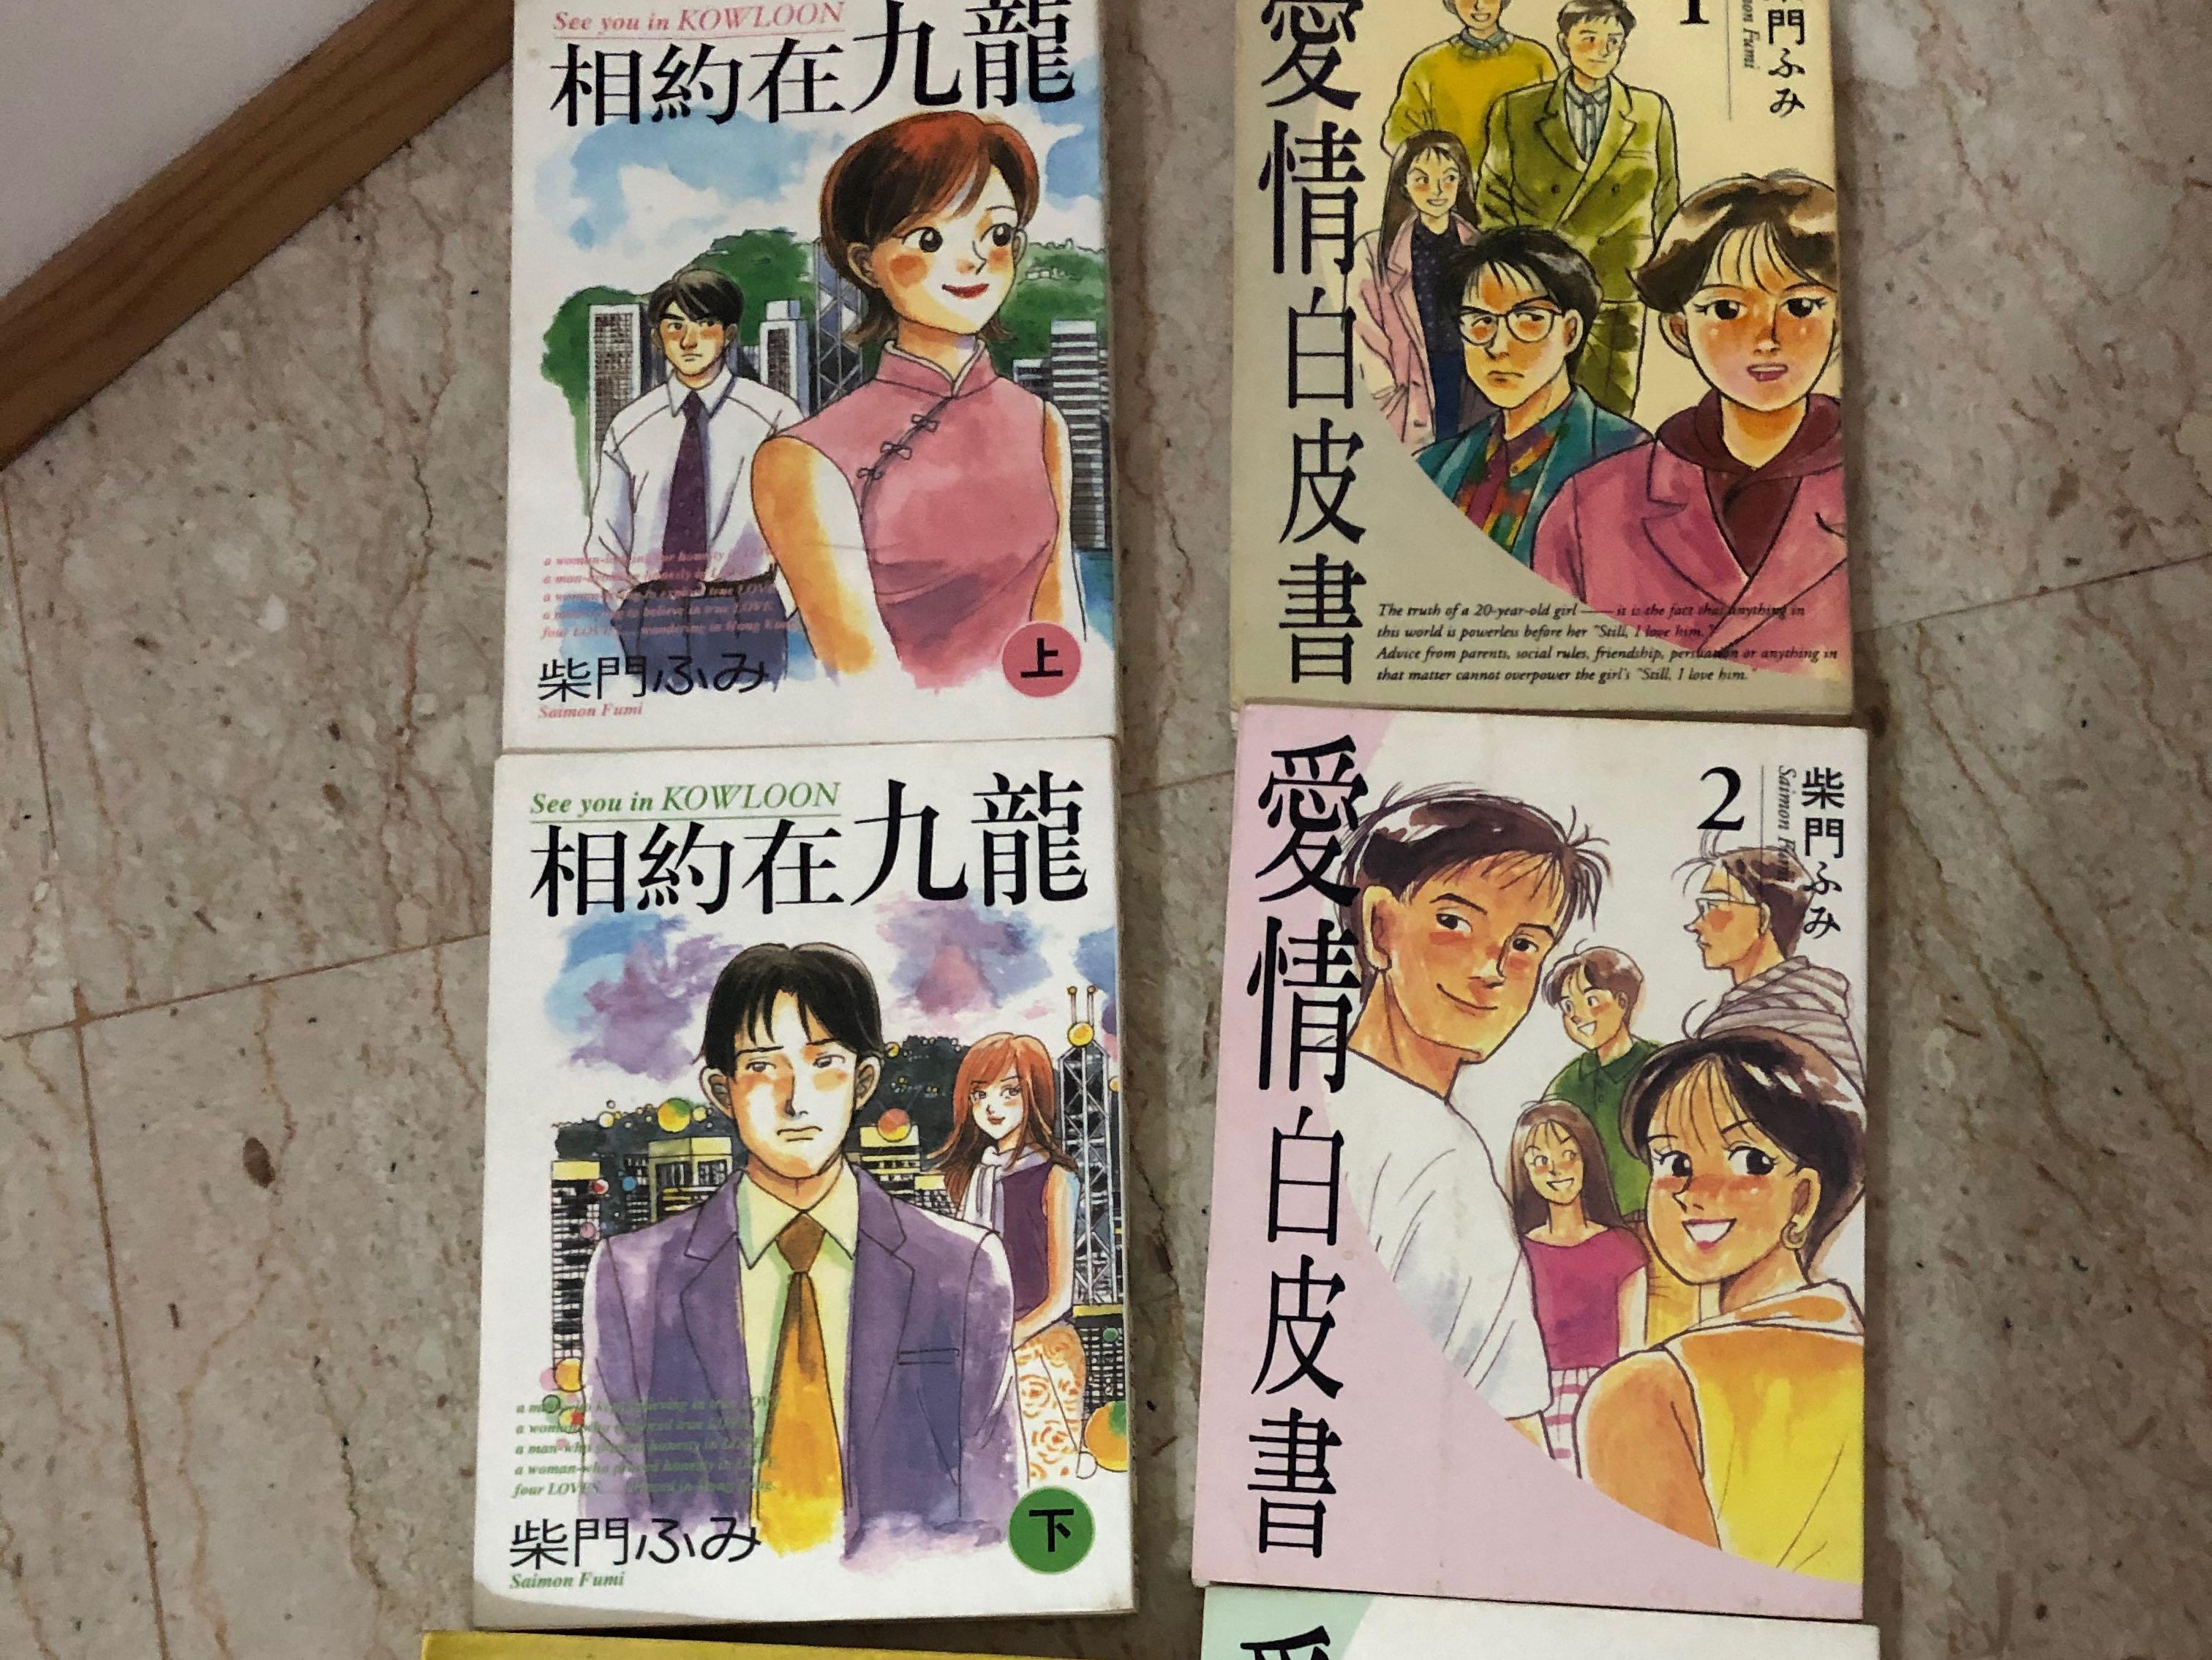 Chinese Comic Books 漫画 Books Stationery Comics Manga On Carousell